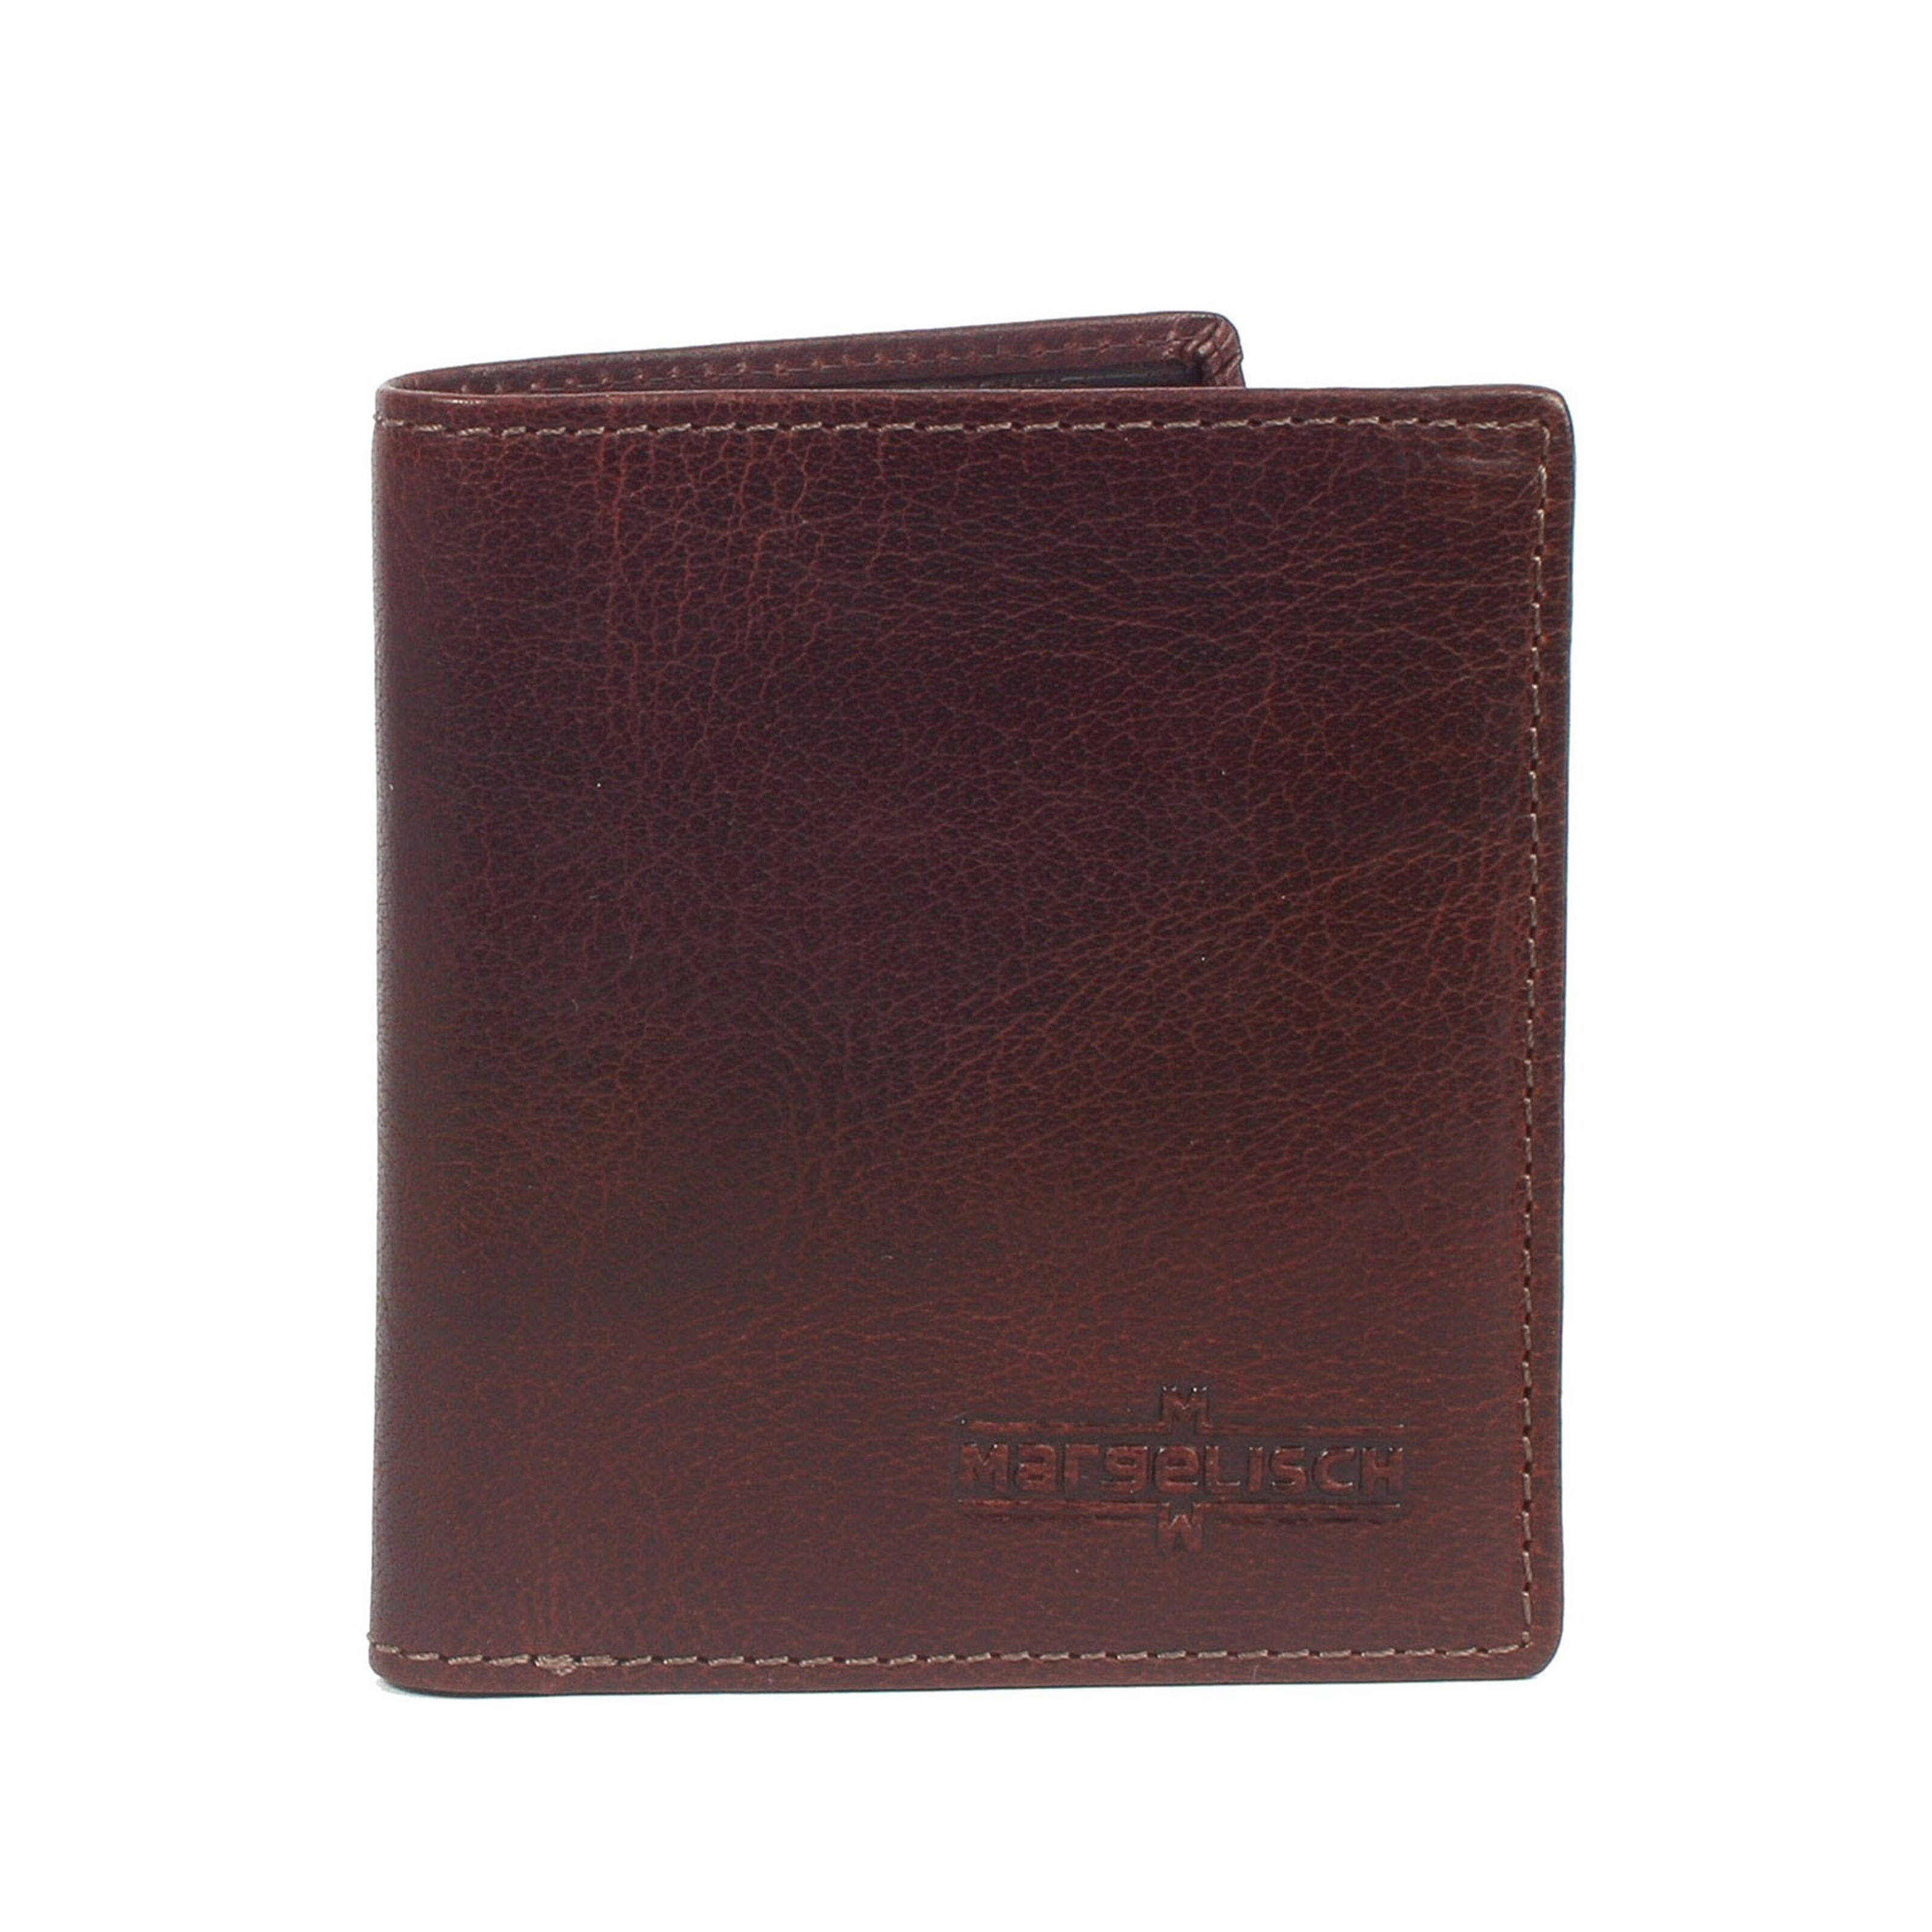 Buy wholesale RFID wallet 2 Tokyo brown